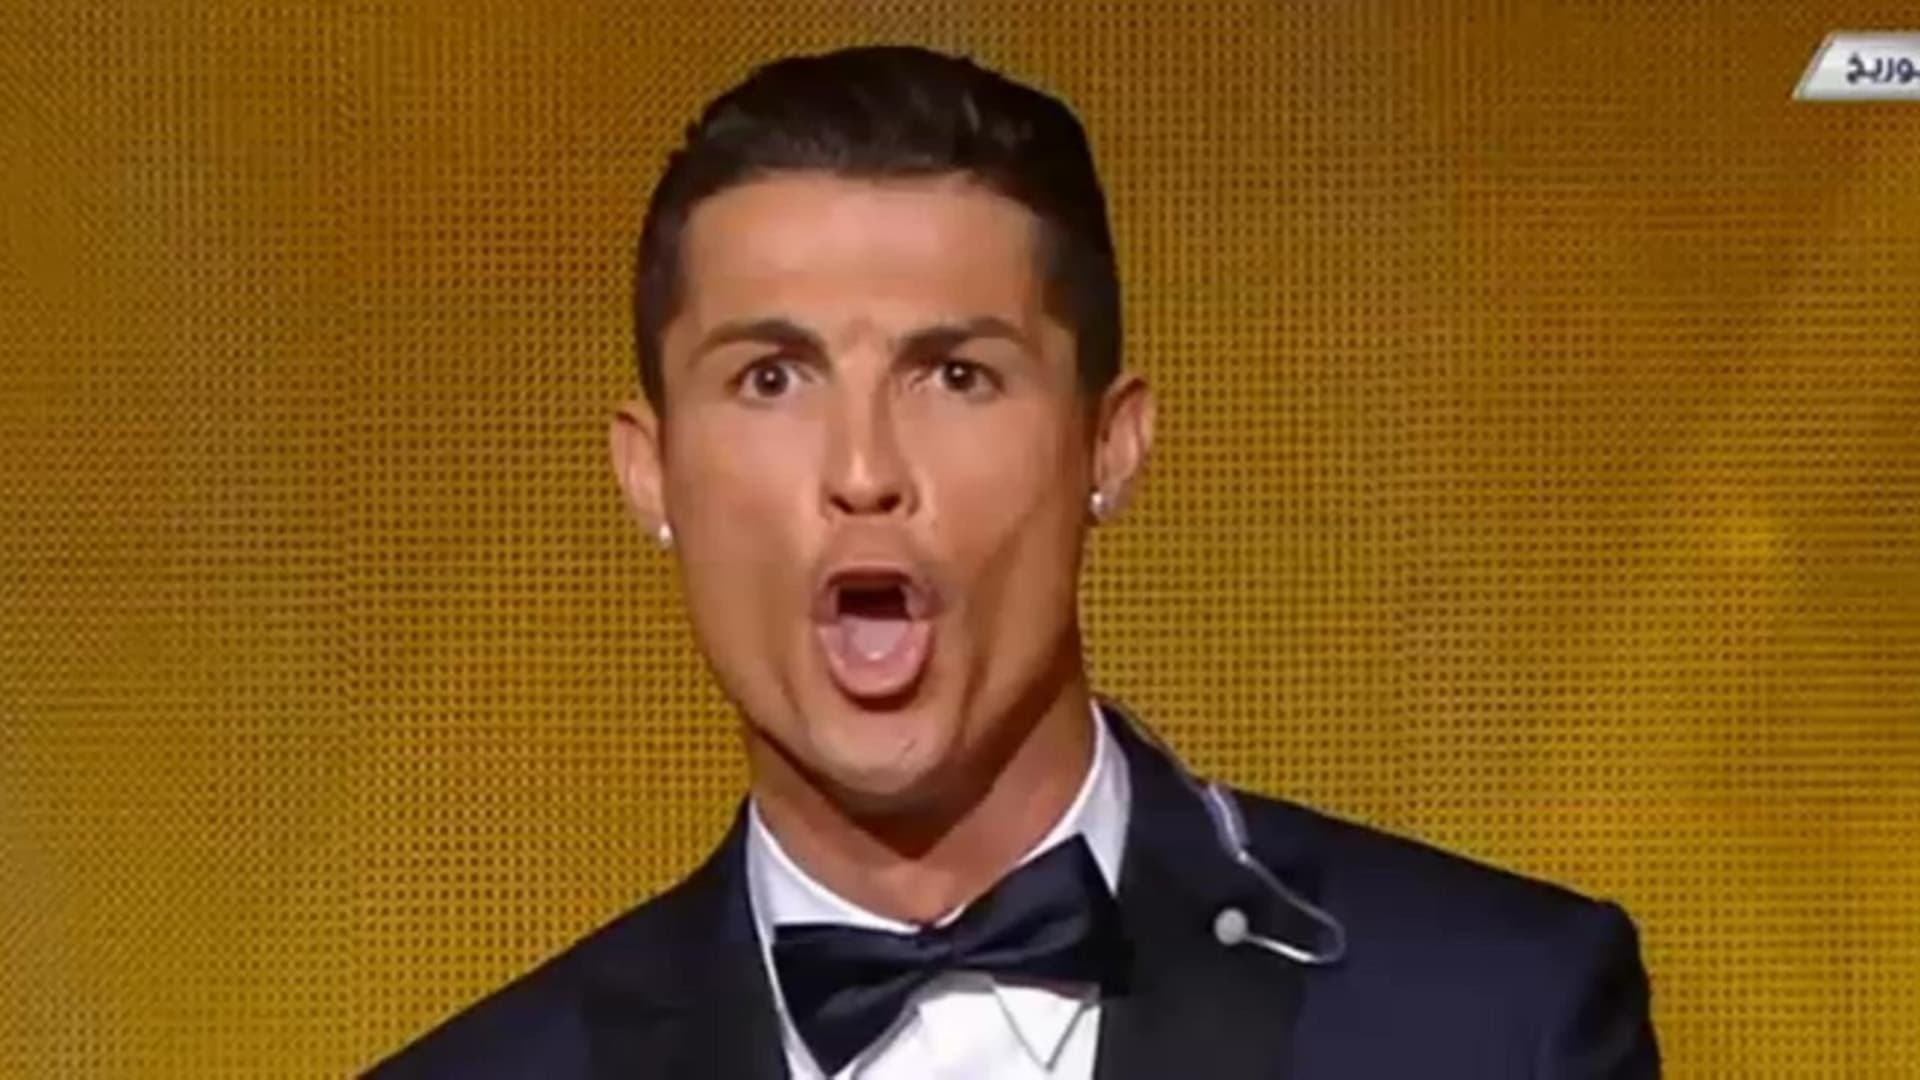 Ronaldo se nechal unést a teď toho možná lituje